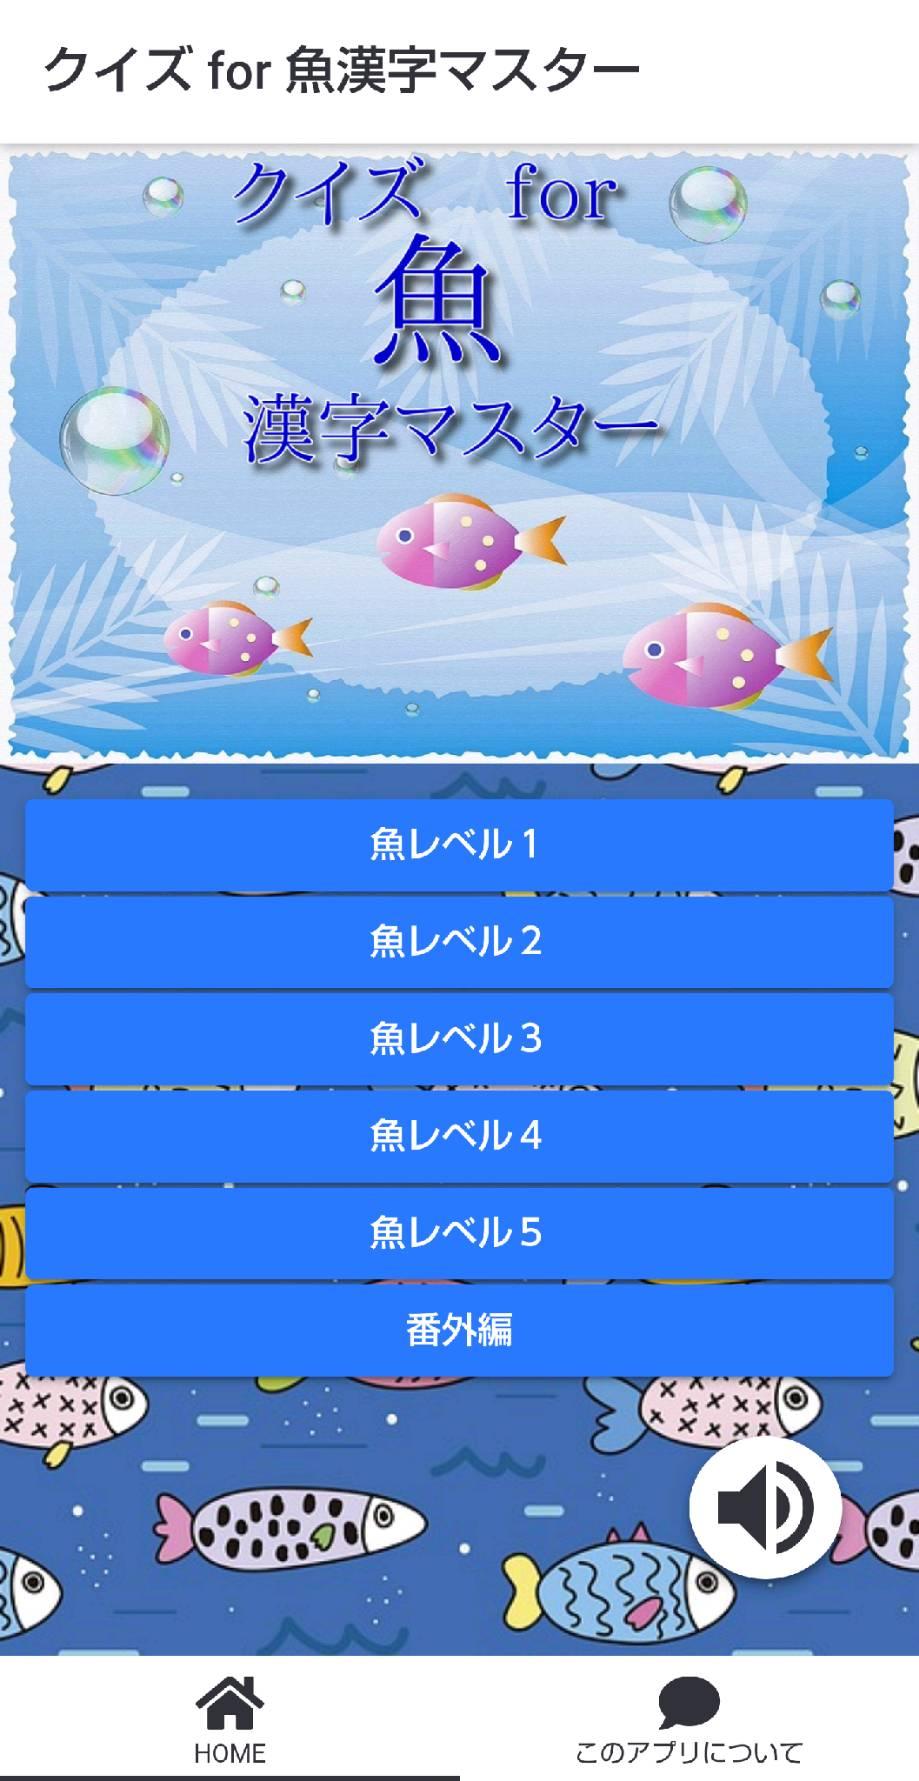 魚漢字マスター クイズゲームで知識 を学べるアプリ For Android Apk Download